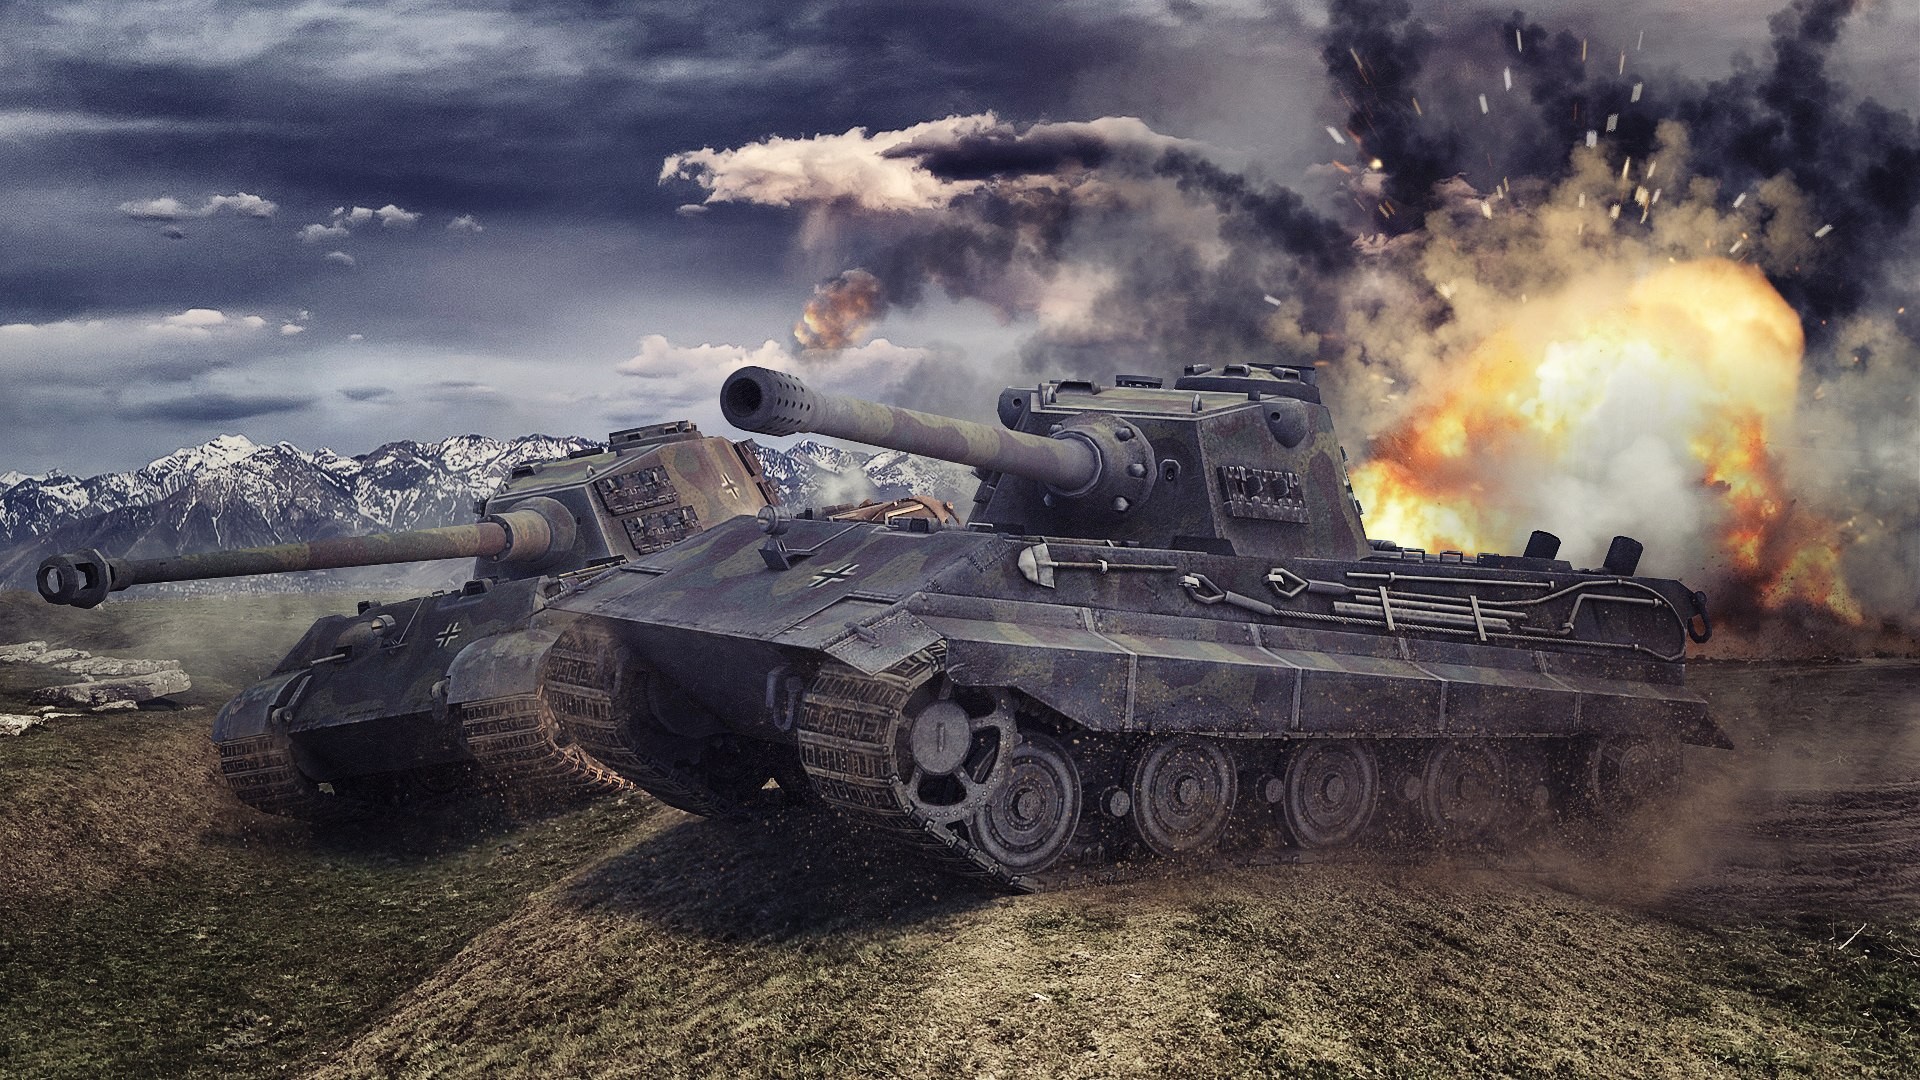 General 1920x1080 World of Tanks tank wargaming video games Tiger II E-75 German tanks